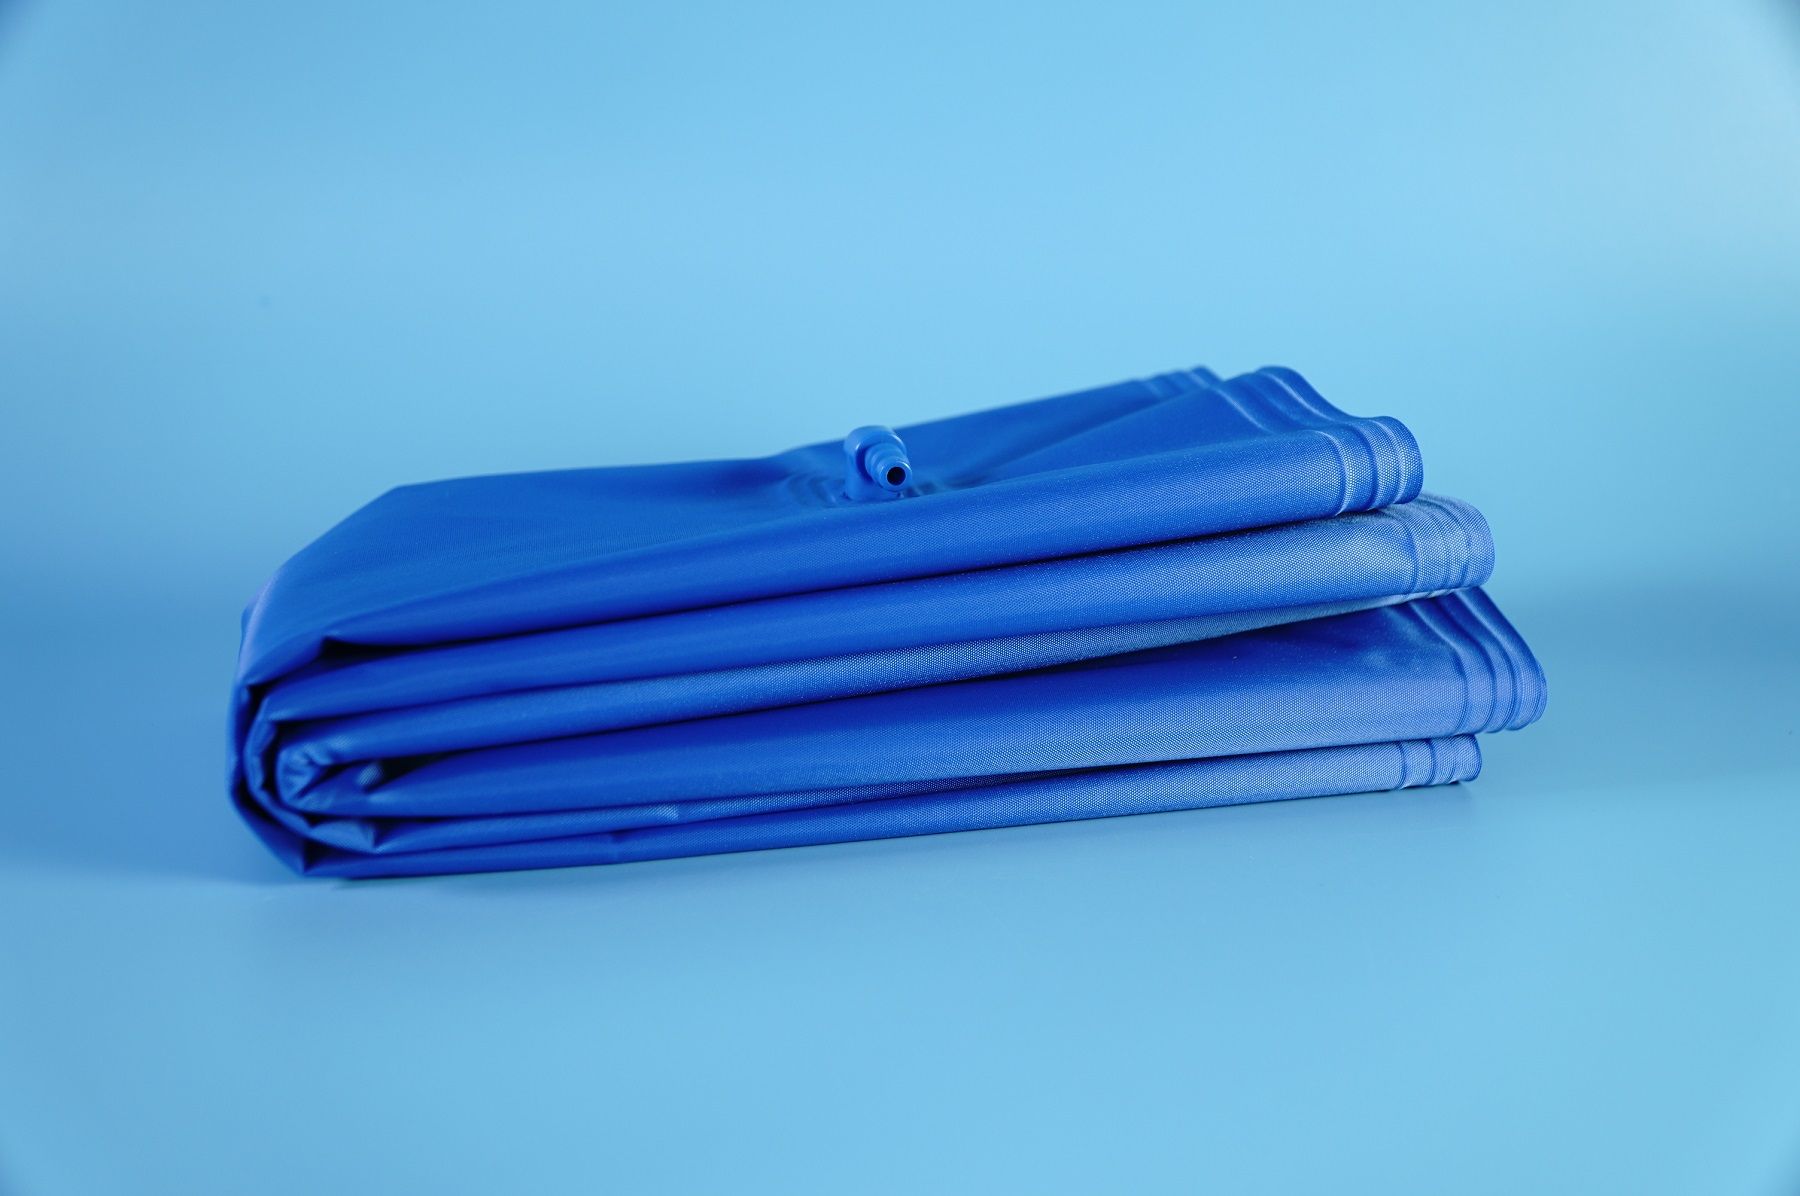  Túi dự trữ Oxy, túi đựng Oxy hiệu Sintrue xanh lớn - Dung tích 42 lít 